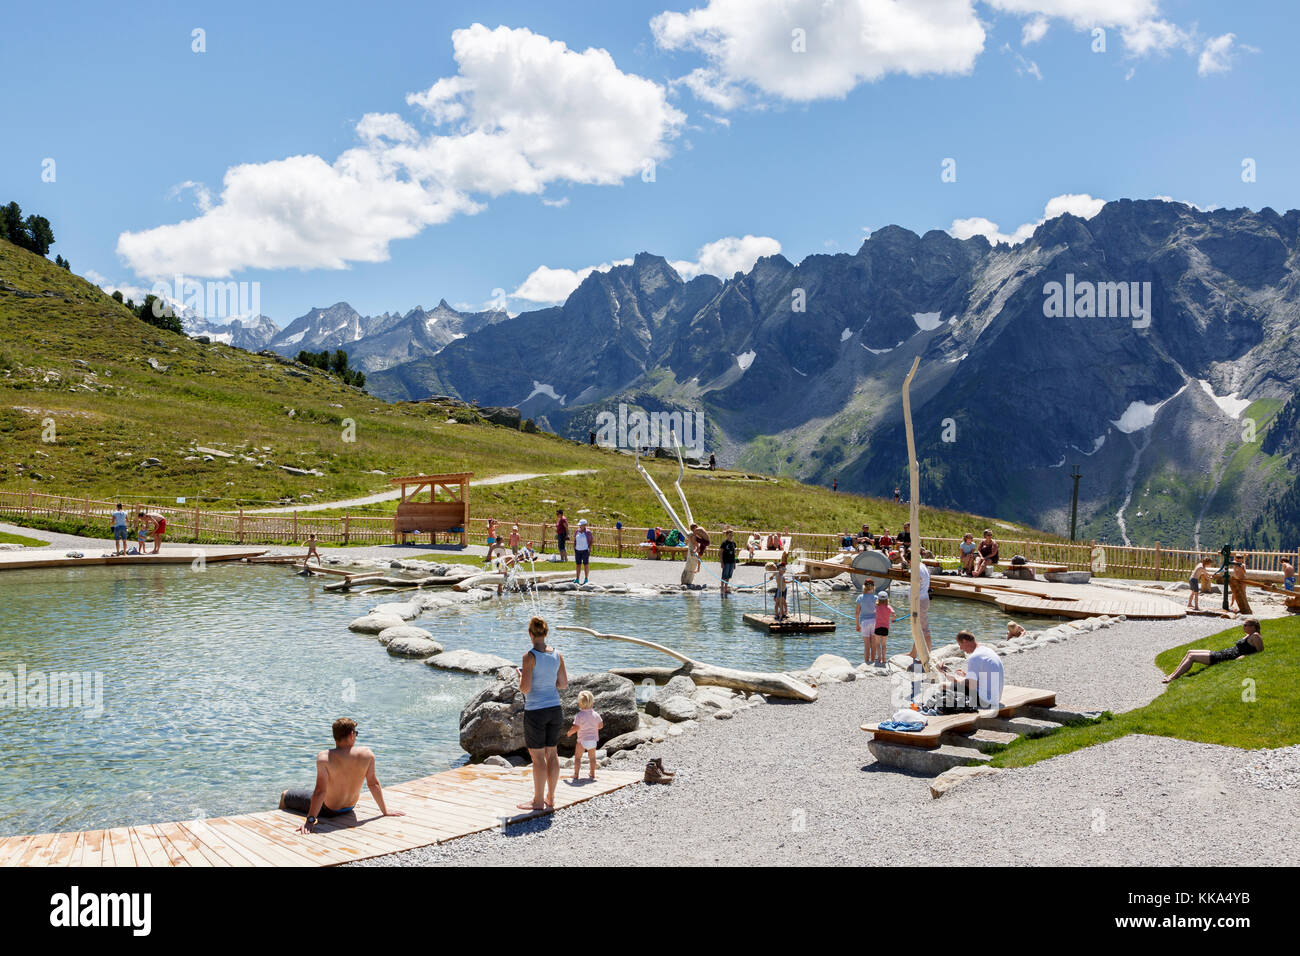 Lac de baignade sur l'ahorn mountain, mayrhofen, Autriche Banque D'Images